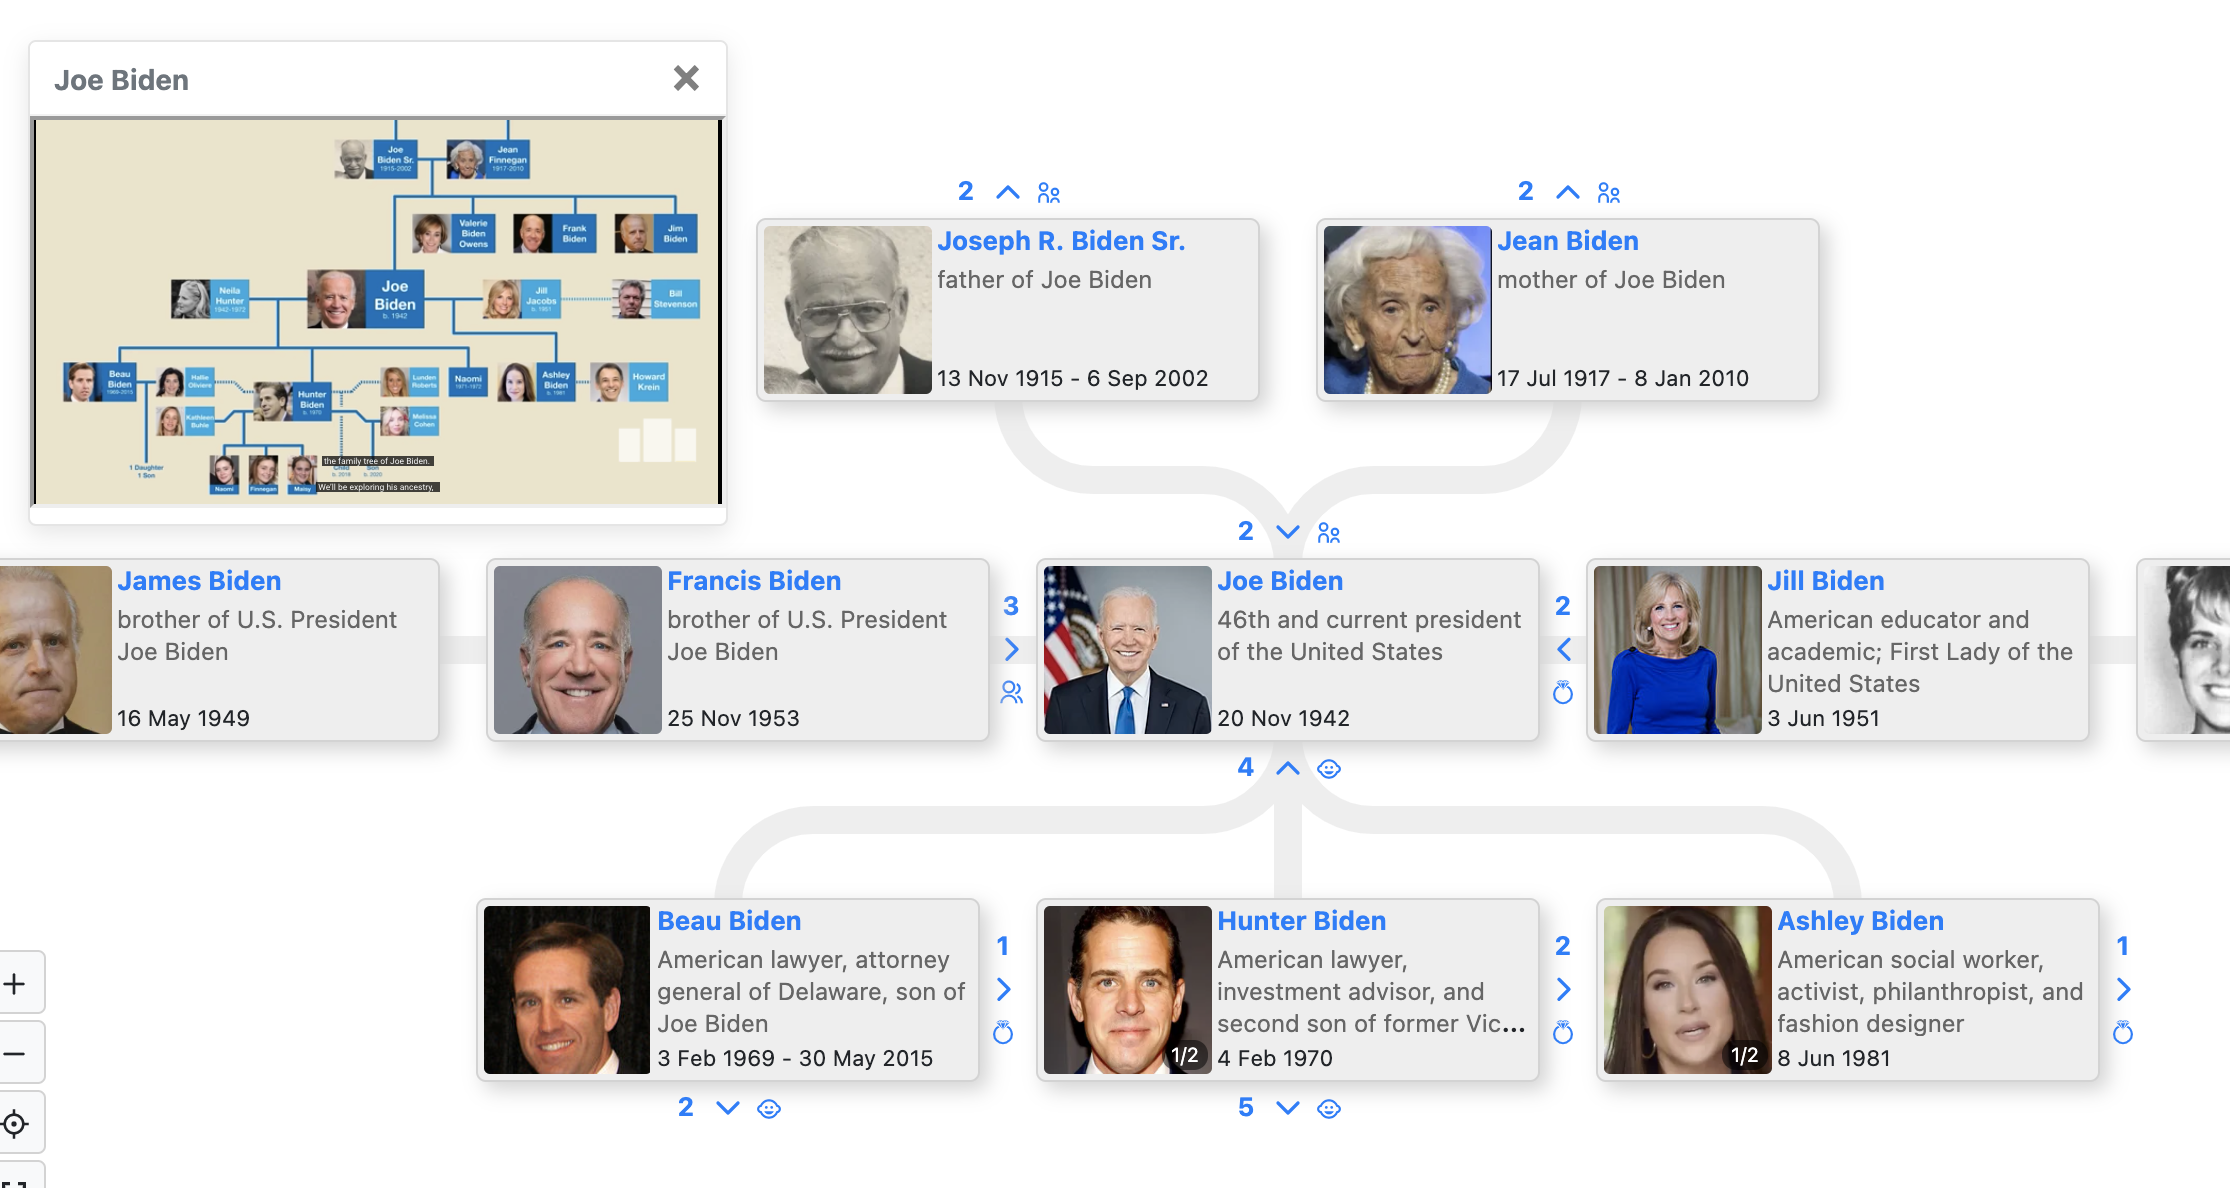 Joe Biden family tree